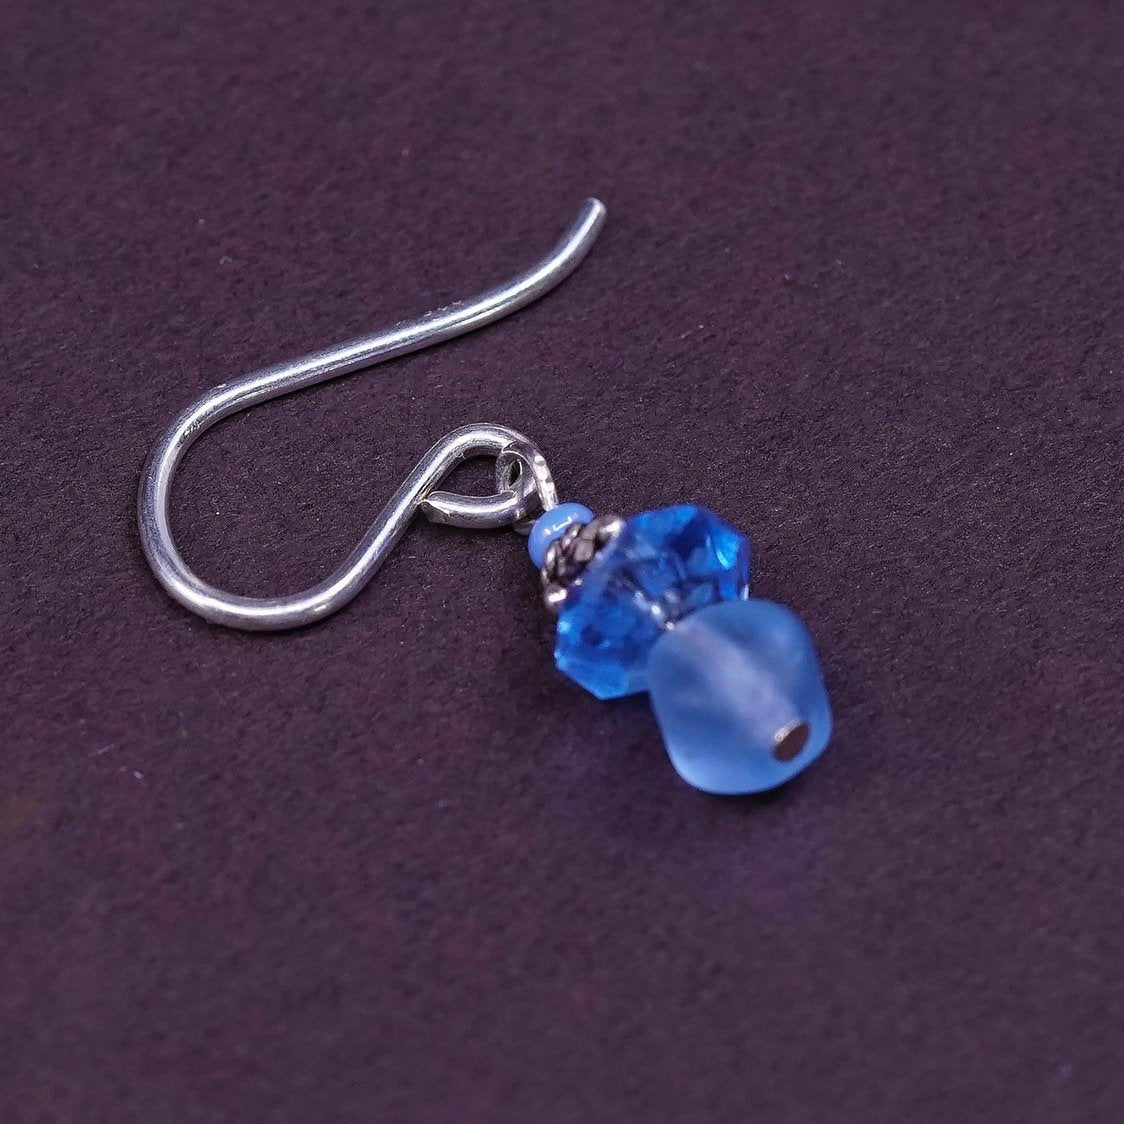 vtg Sterling silver handmade earrings, 925 hooks with blue crystal beads